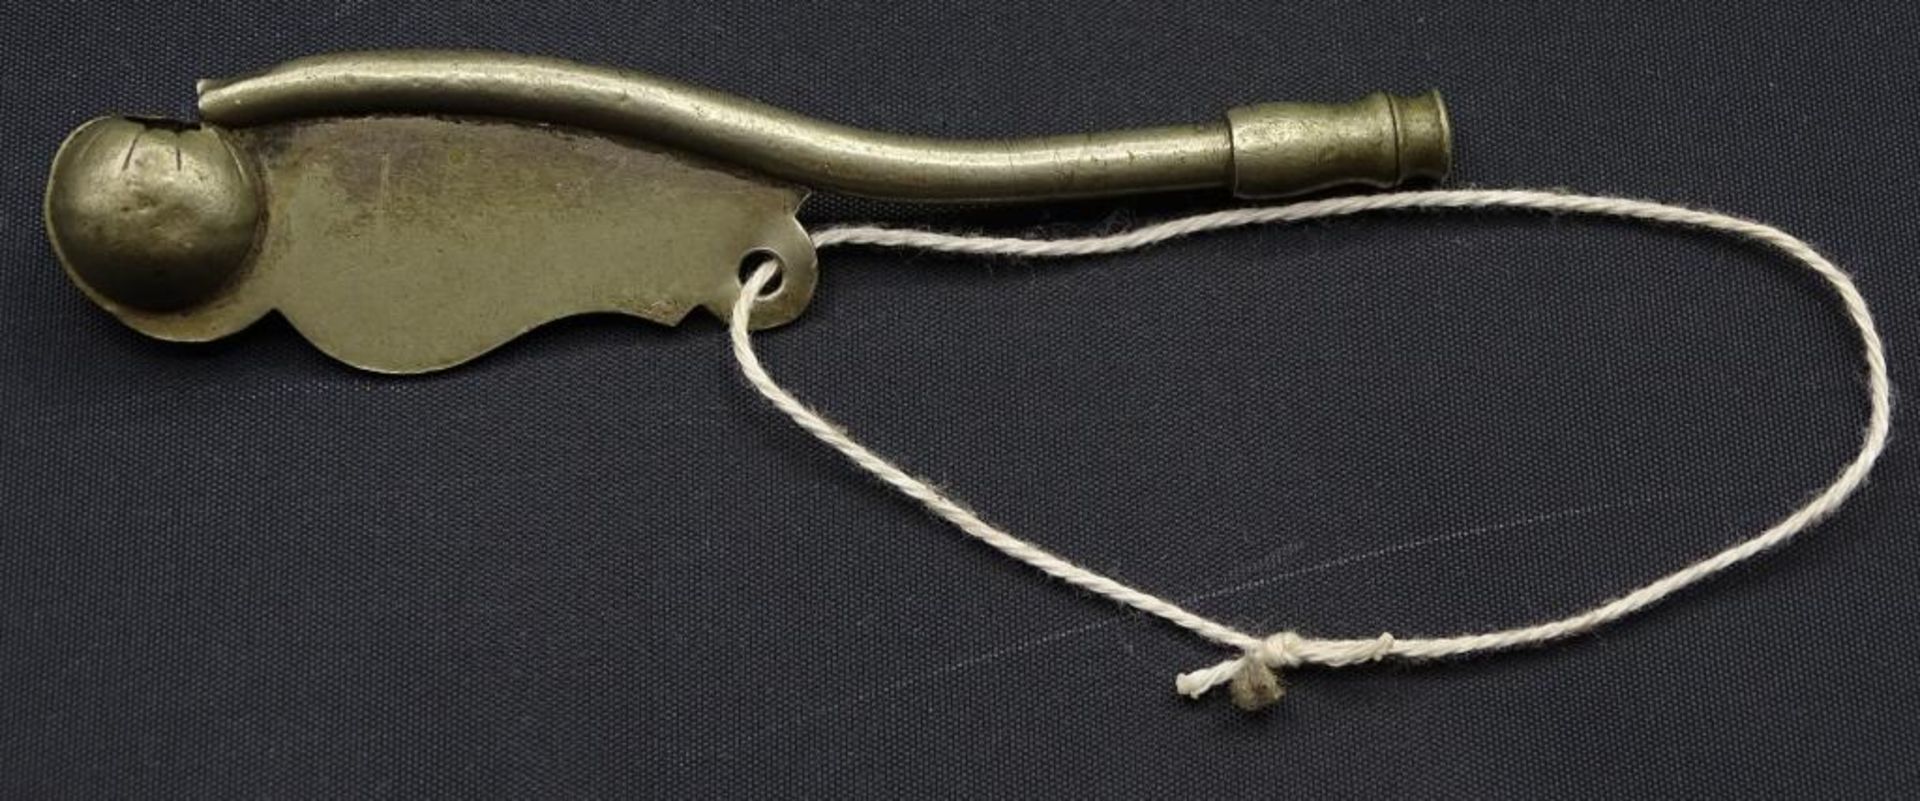 Bootsmanns Pfeife,Metall,L11,3cm,Alters-und Gebrauchsspuren - Bild 2 aus 3